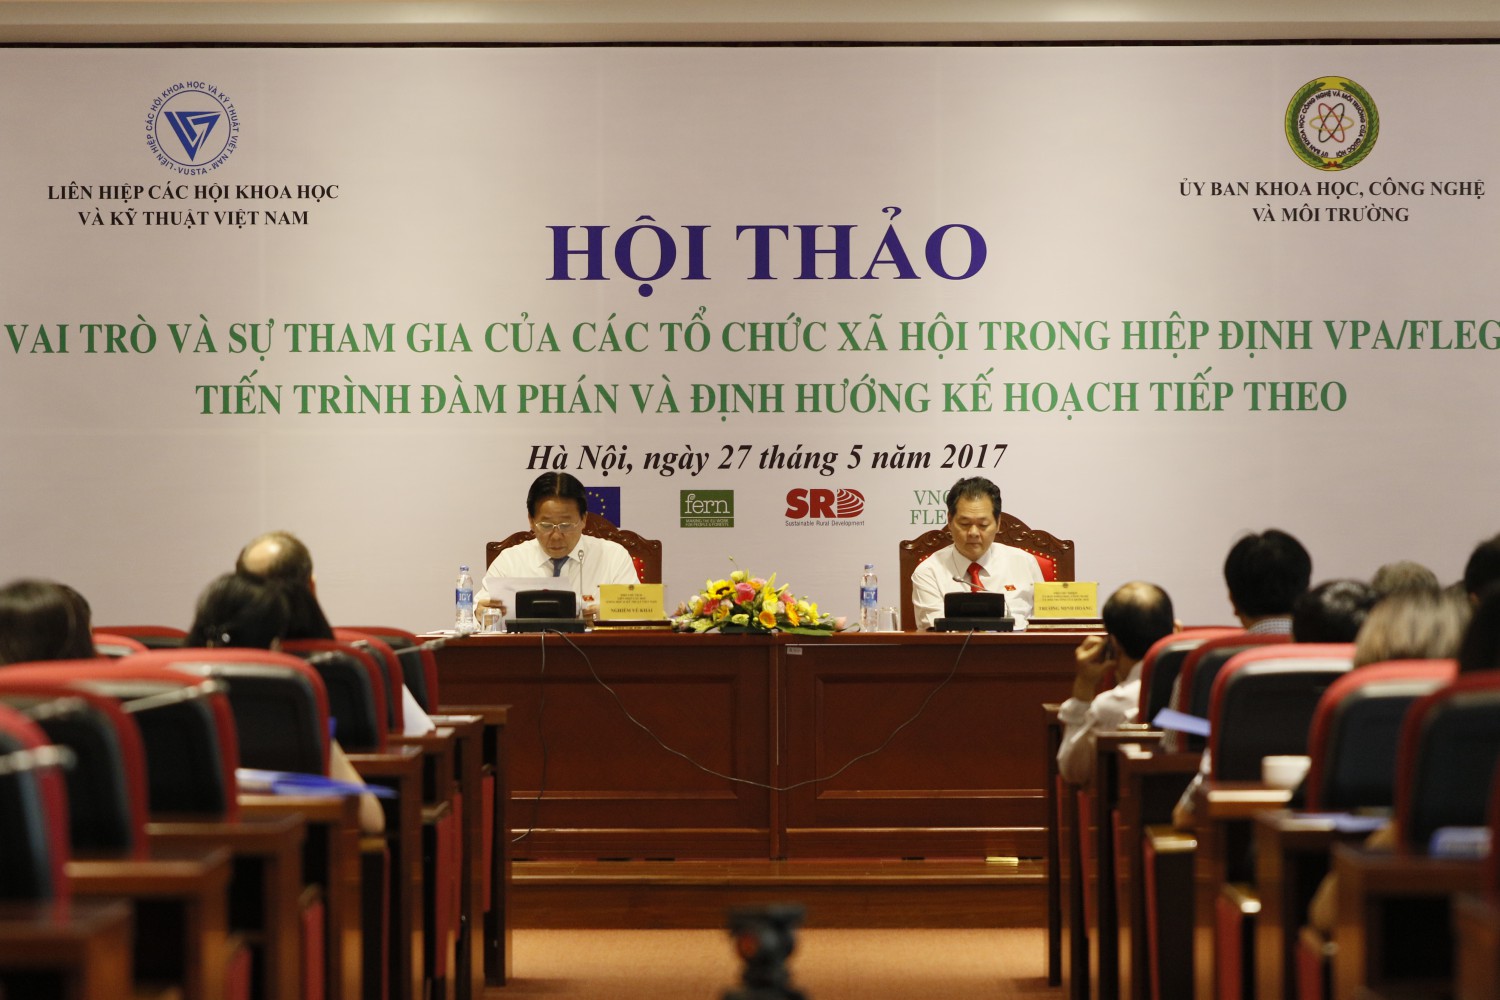 Chia sẻ thông tin về Hiệp định VPA/FLEGT giữa Việt Nam và EU